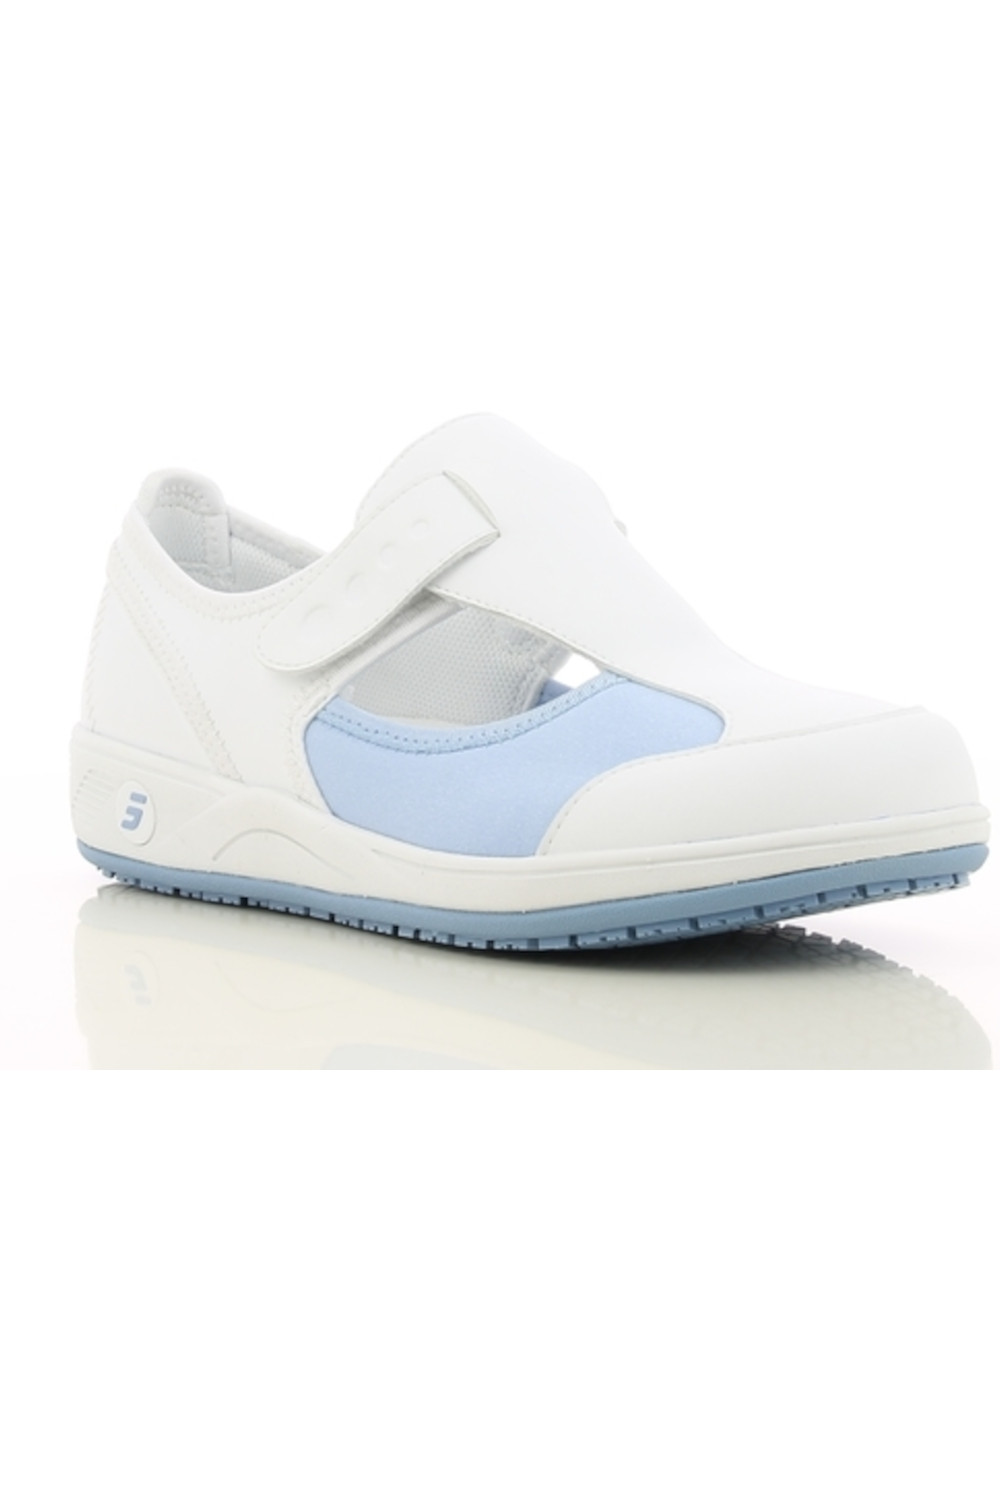 Buty damskie CAMILLE obuwie medyczne kolor biały z błękitem